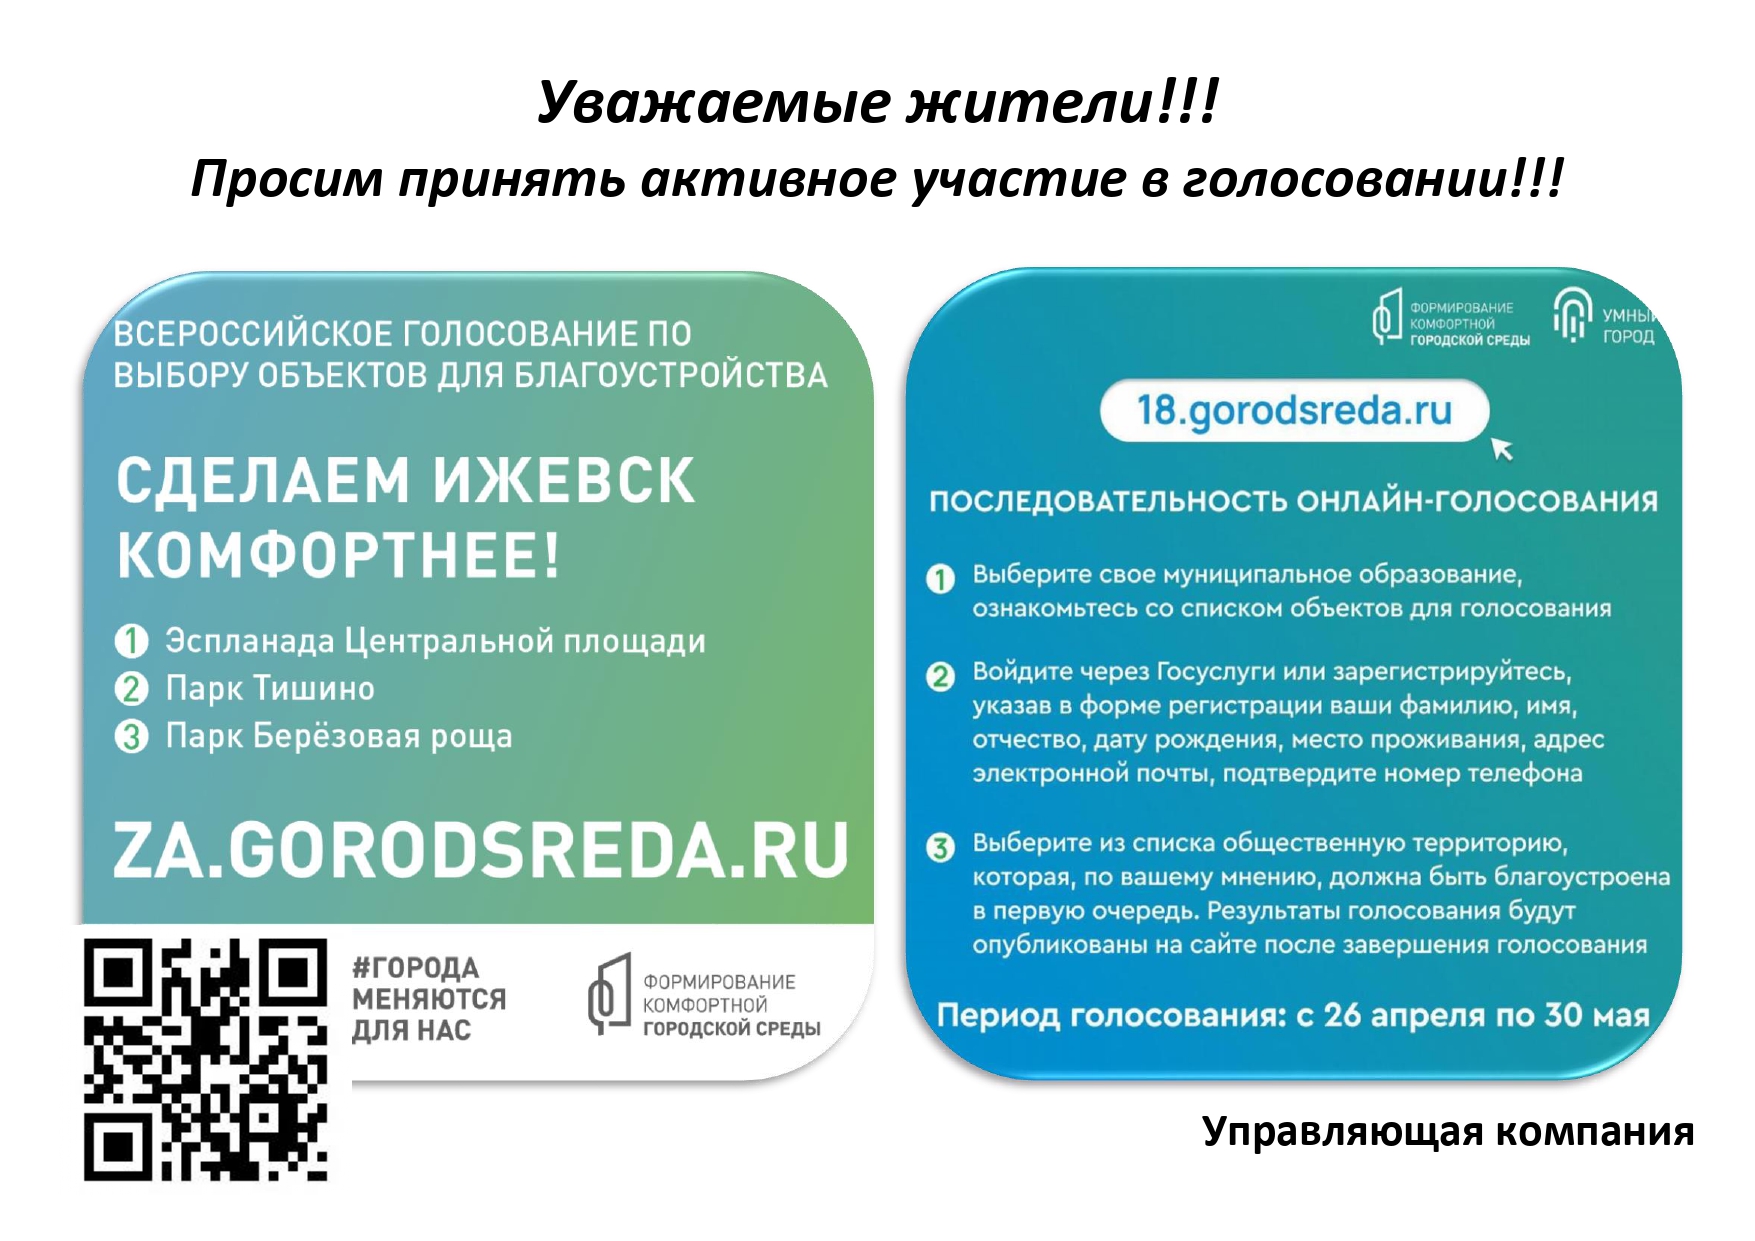 64 gorodsreda ru голосование. Примите участие в голосовании. 66 Городсреда ру проголосовать. 64городсреда.ру.